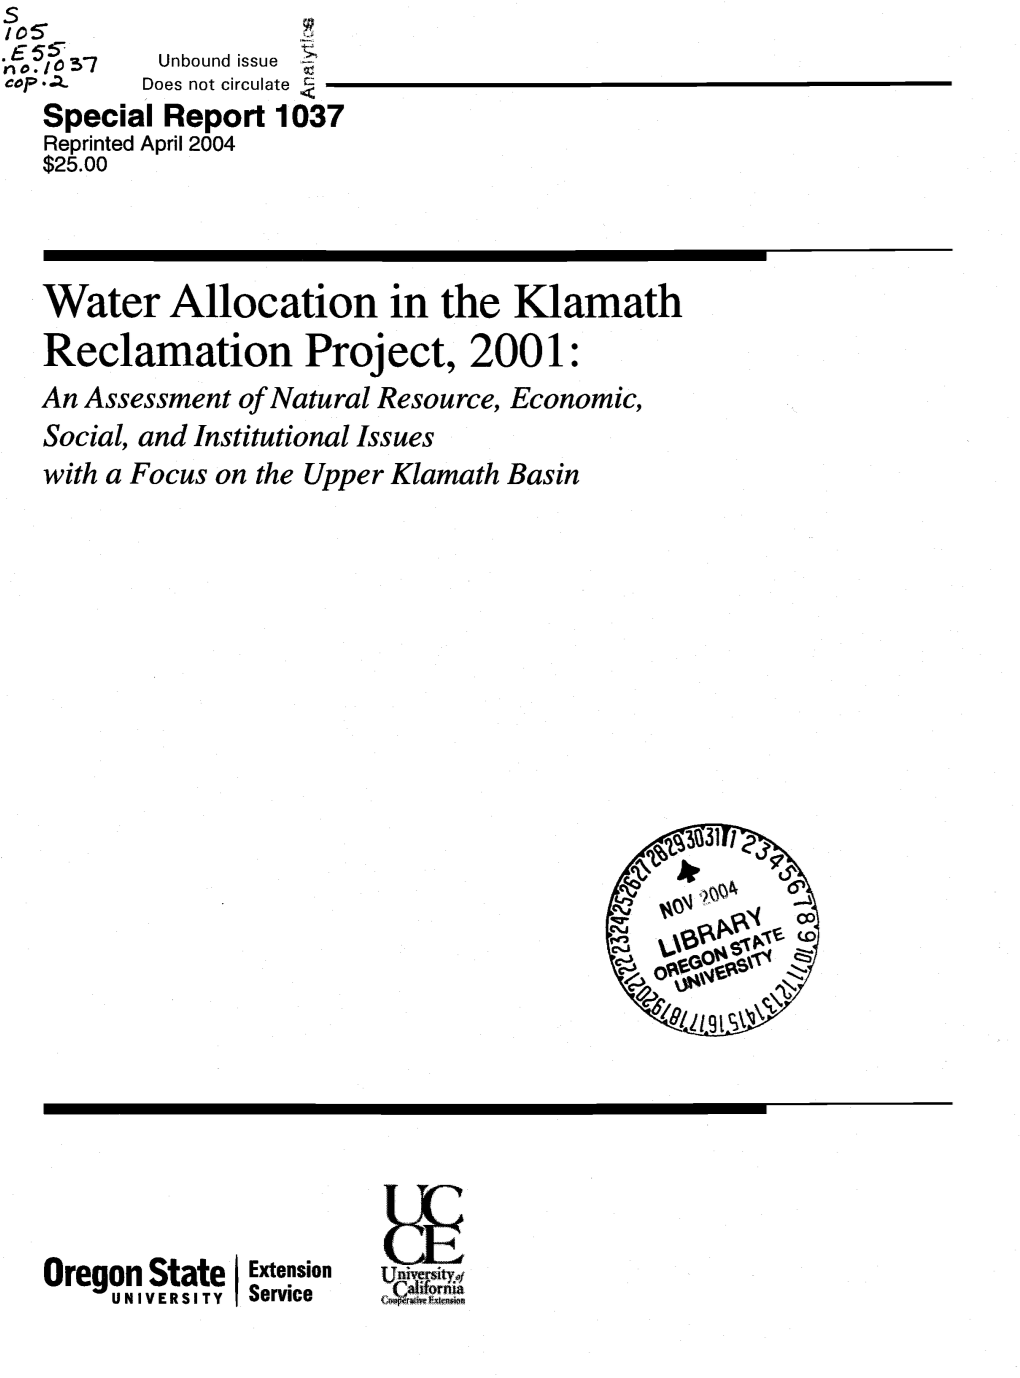 Water Allocation in the Kiamath